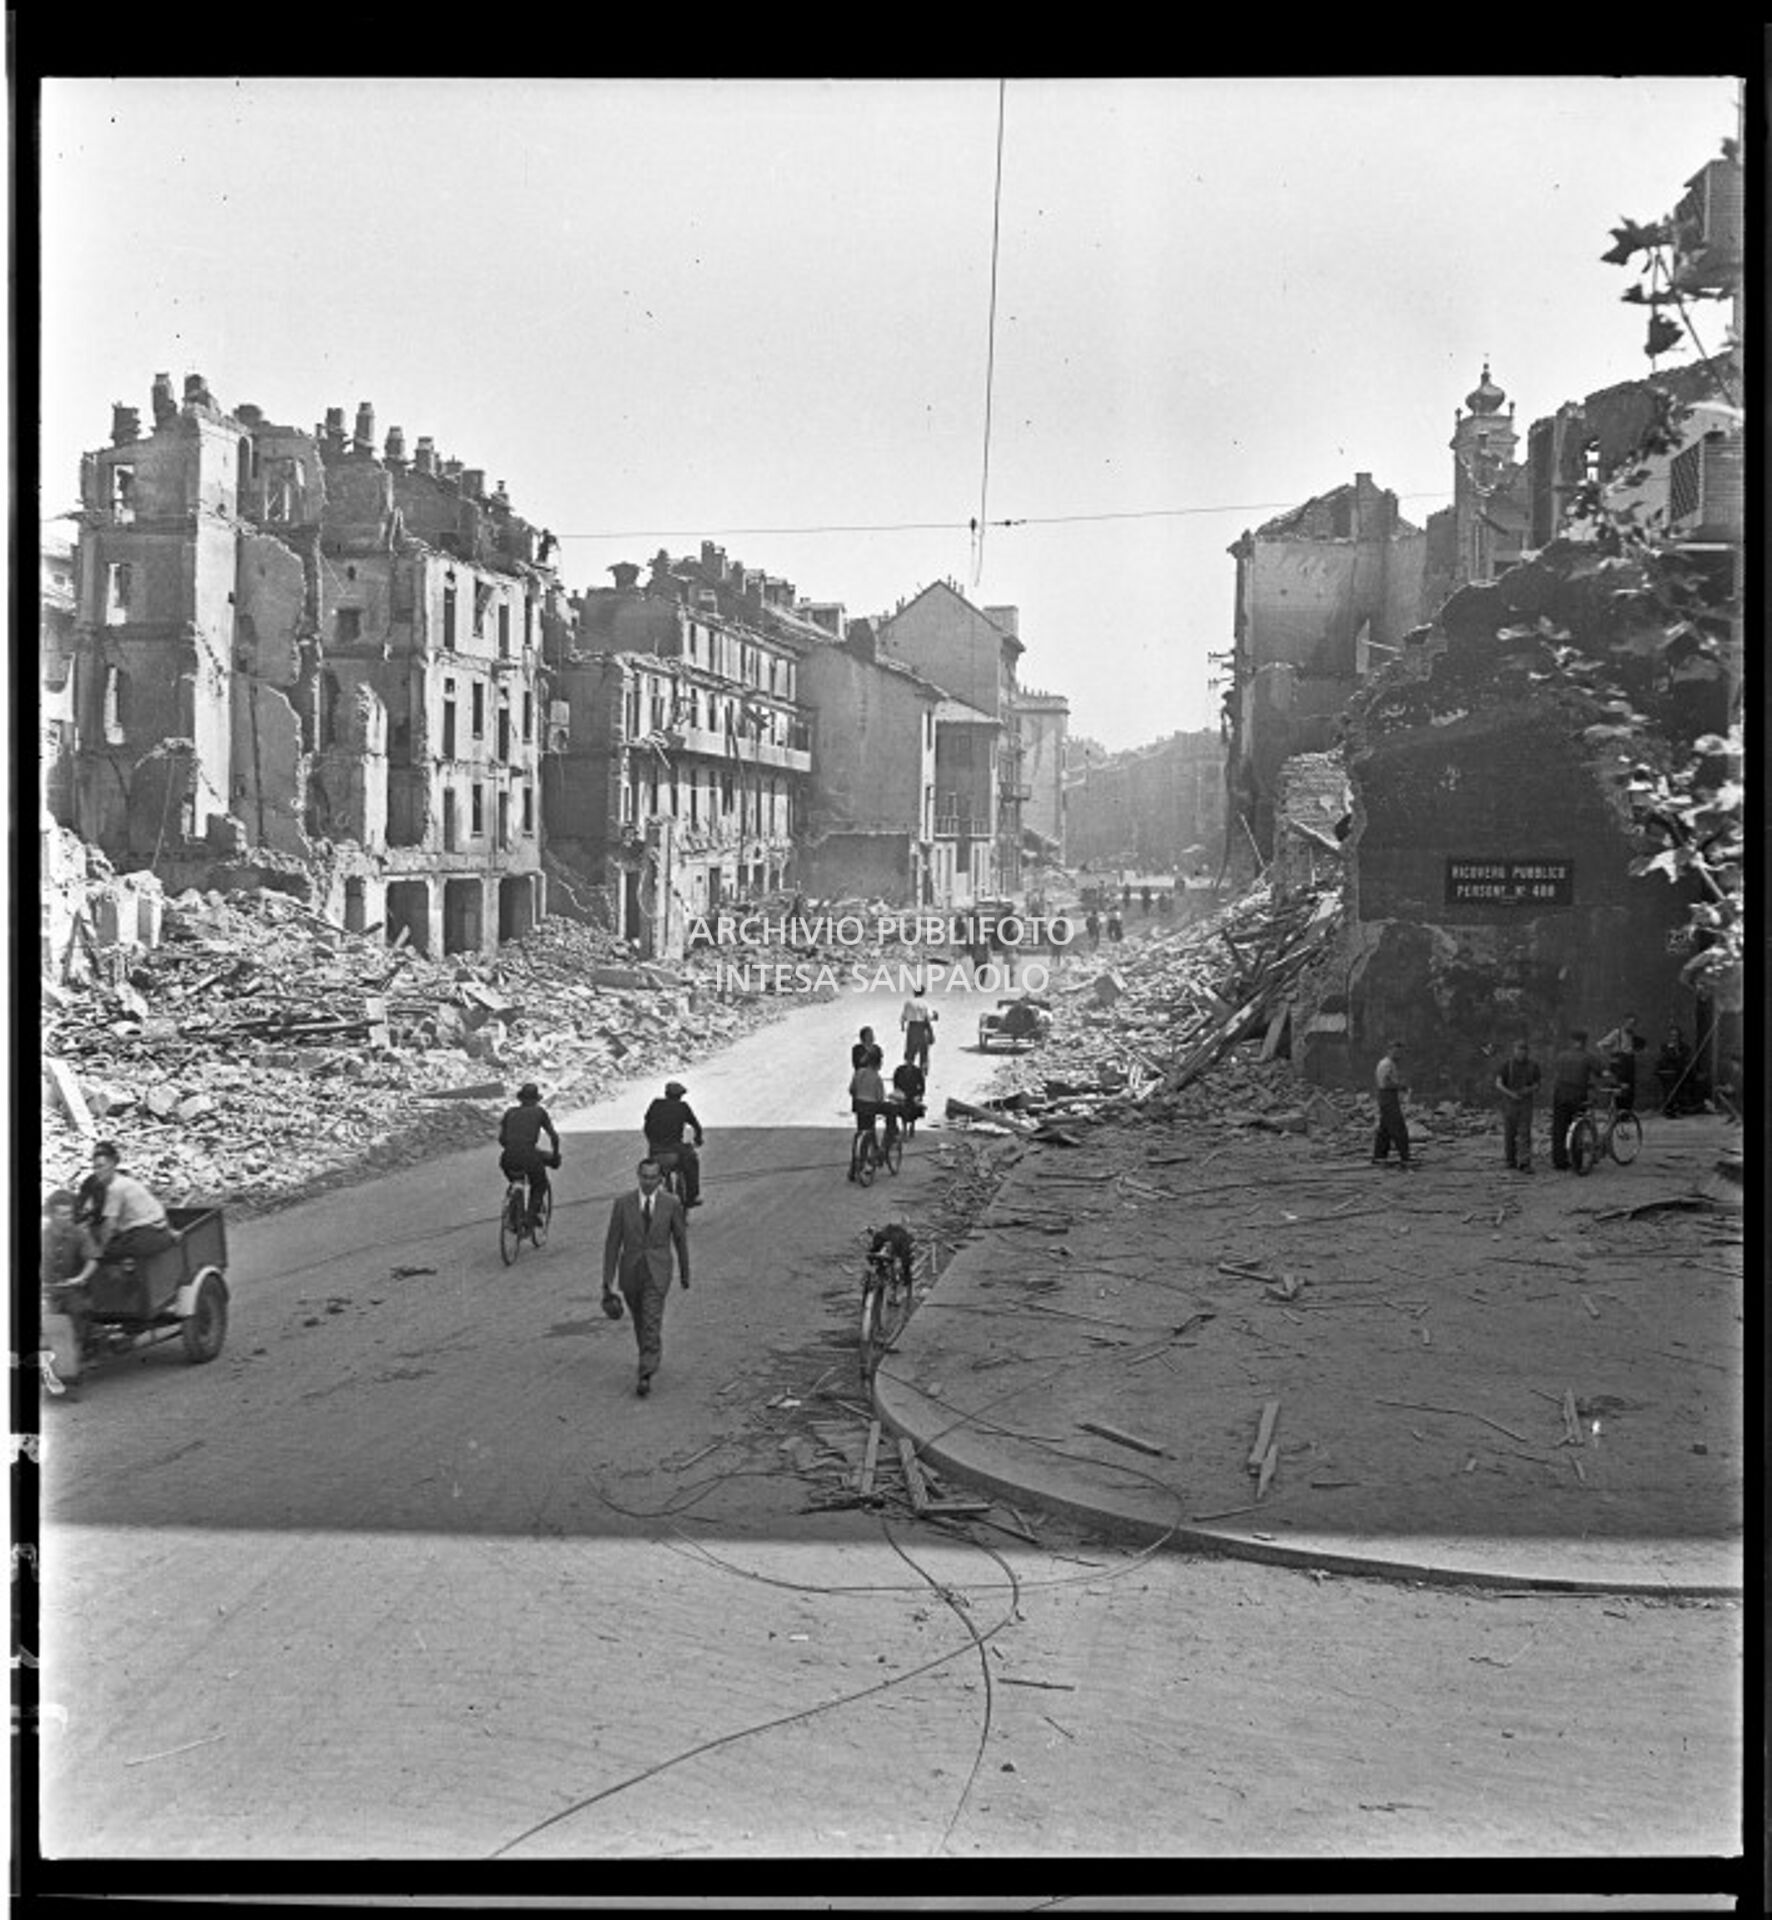 Veduta di via Molino delle Armi a Milano con gli edifici distrutti dai bombardamenti. Le macerie sono state addossate ai lati della strada per consentire la circolazione di biciclette, pedoni, carretti come quelli visibili nell'immagine